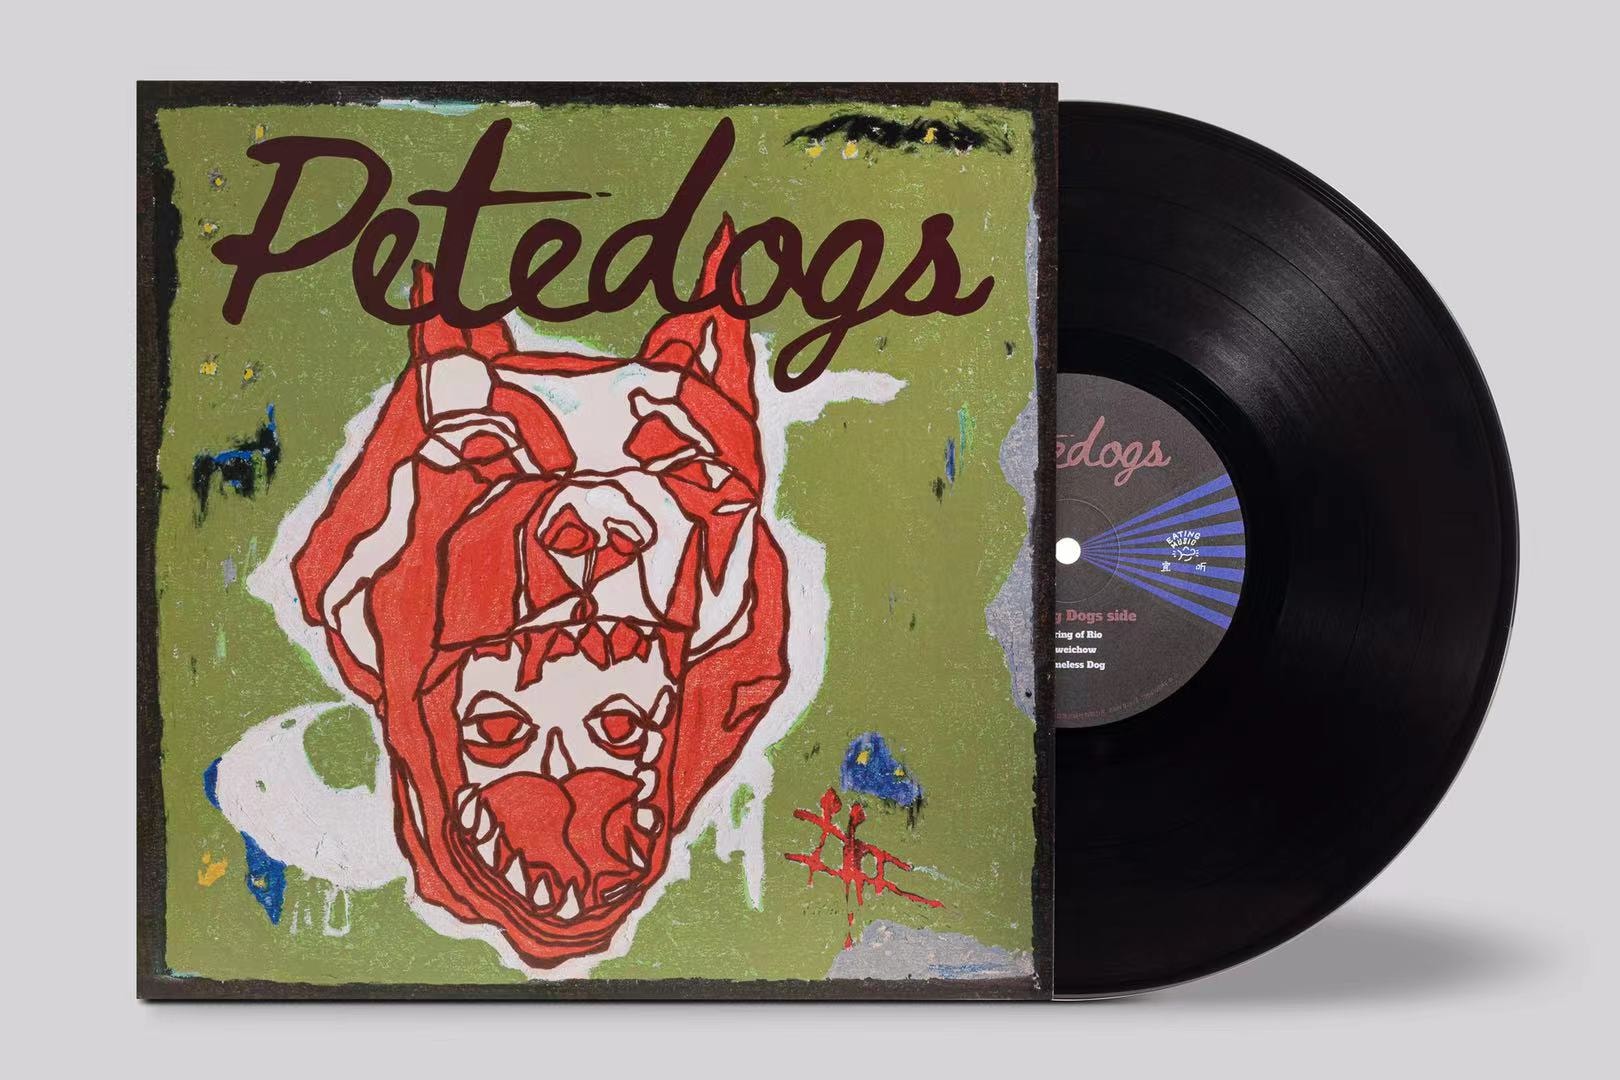 独立厂牌 Eating Music 发行全新 EP《Petedogs》